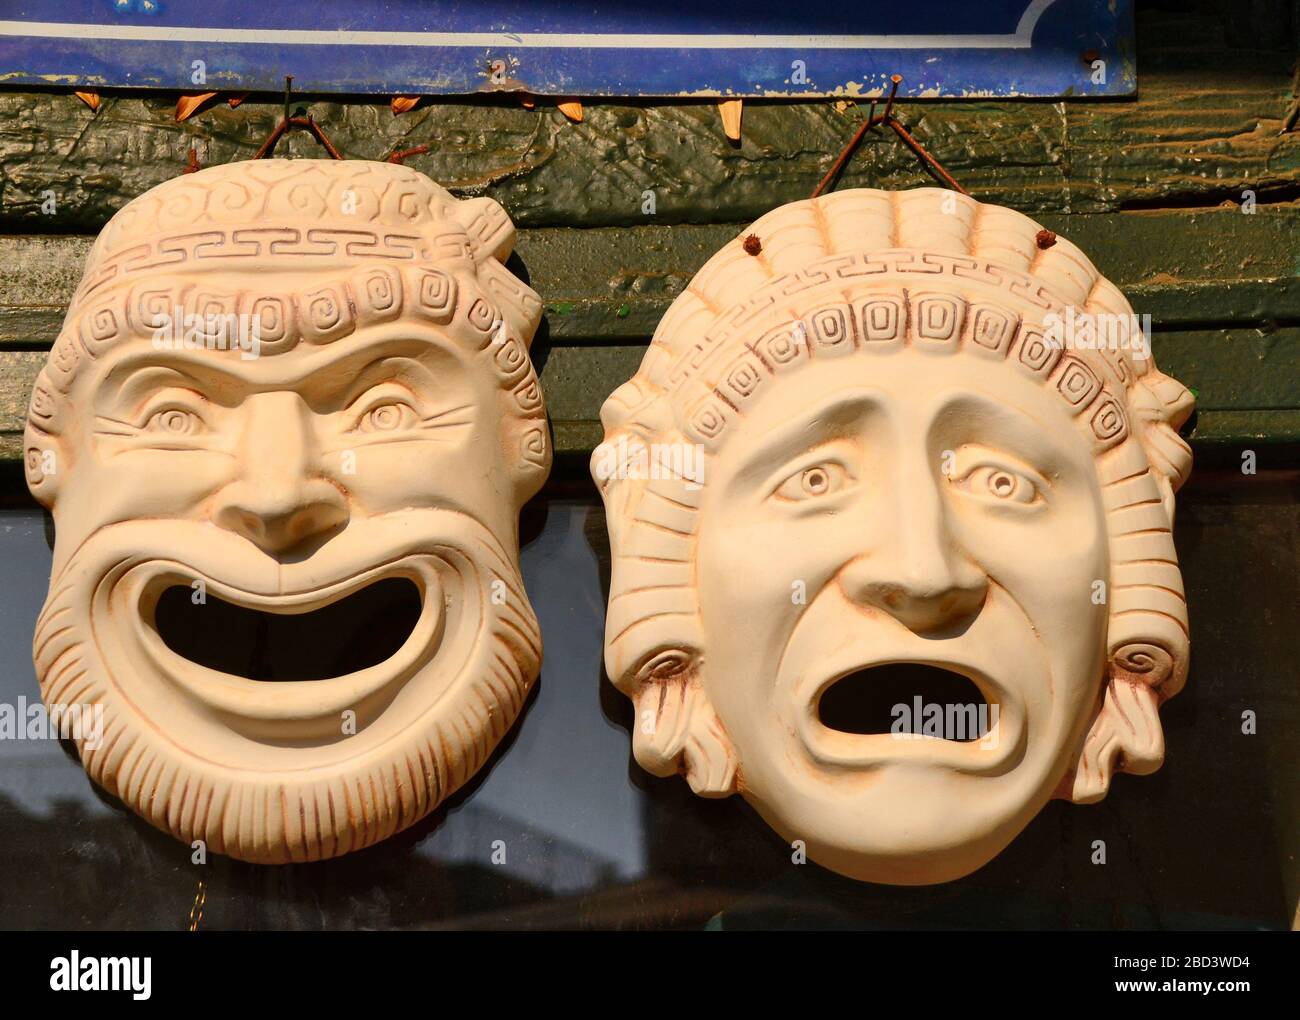 copie moderne di maschere tragiche e comiche di rappresentazioni teatrali dell'antica grecia classica. Foto Stock